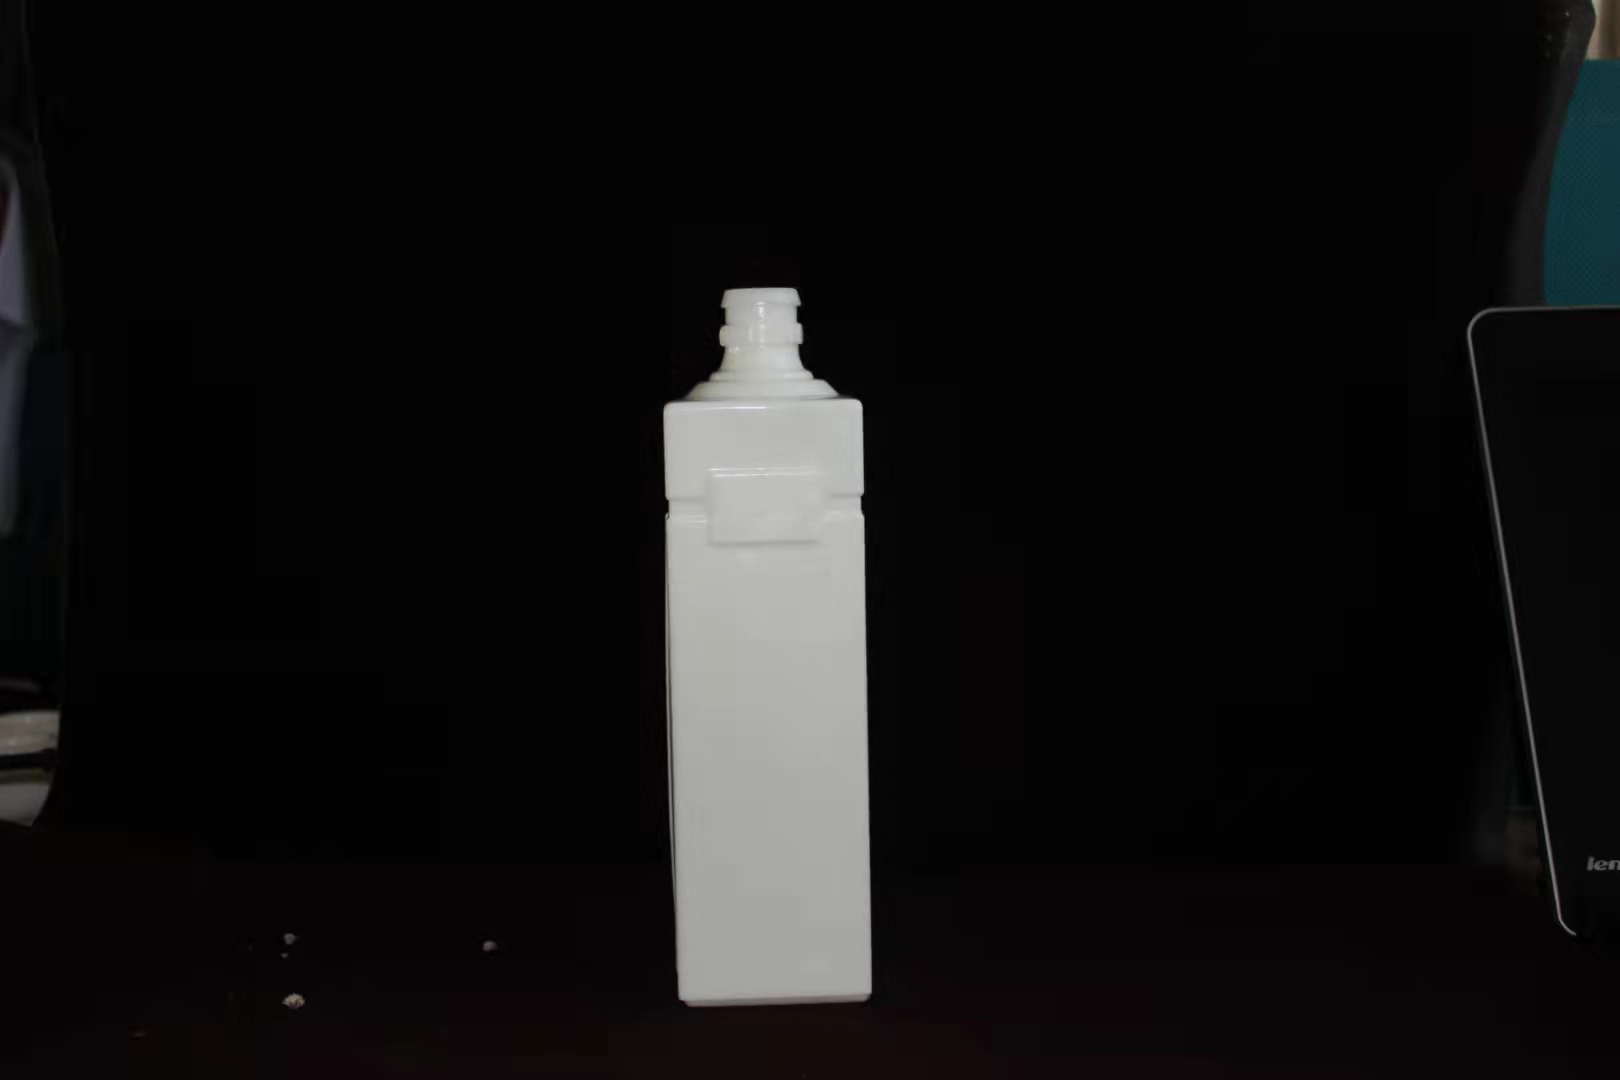 酒瓶 化妆品包装 膏霜瓶 500毫升李广瓶 林州林河玻璃素瓷 精油瓶 乳白瓶 眼霜瓶2